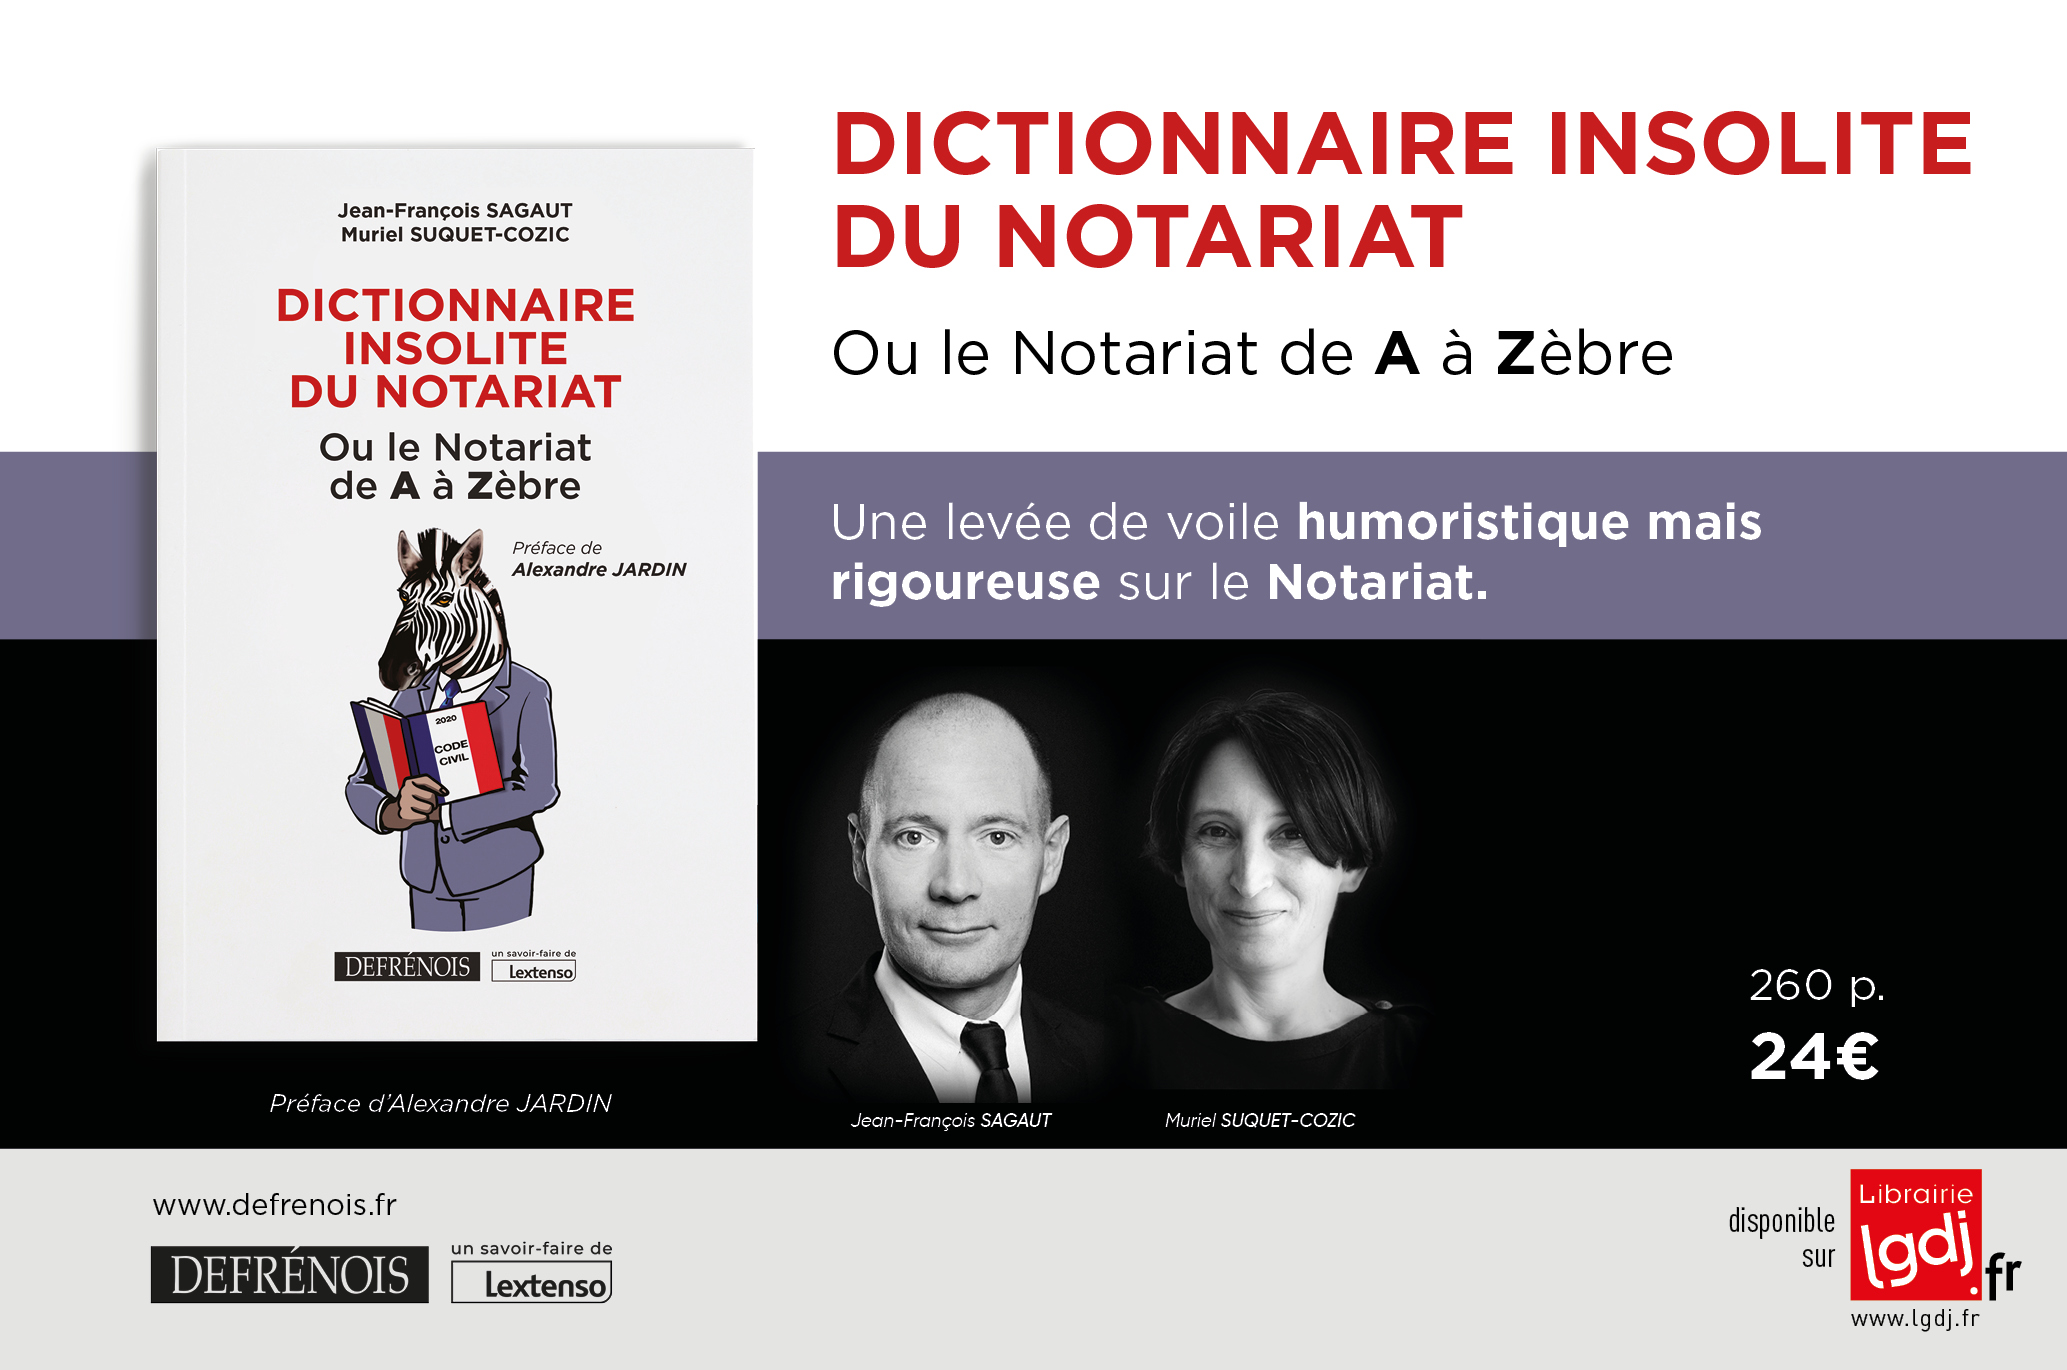 Dictionnaire insolite du notariat